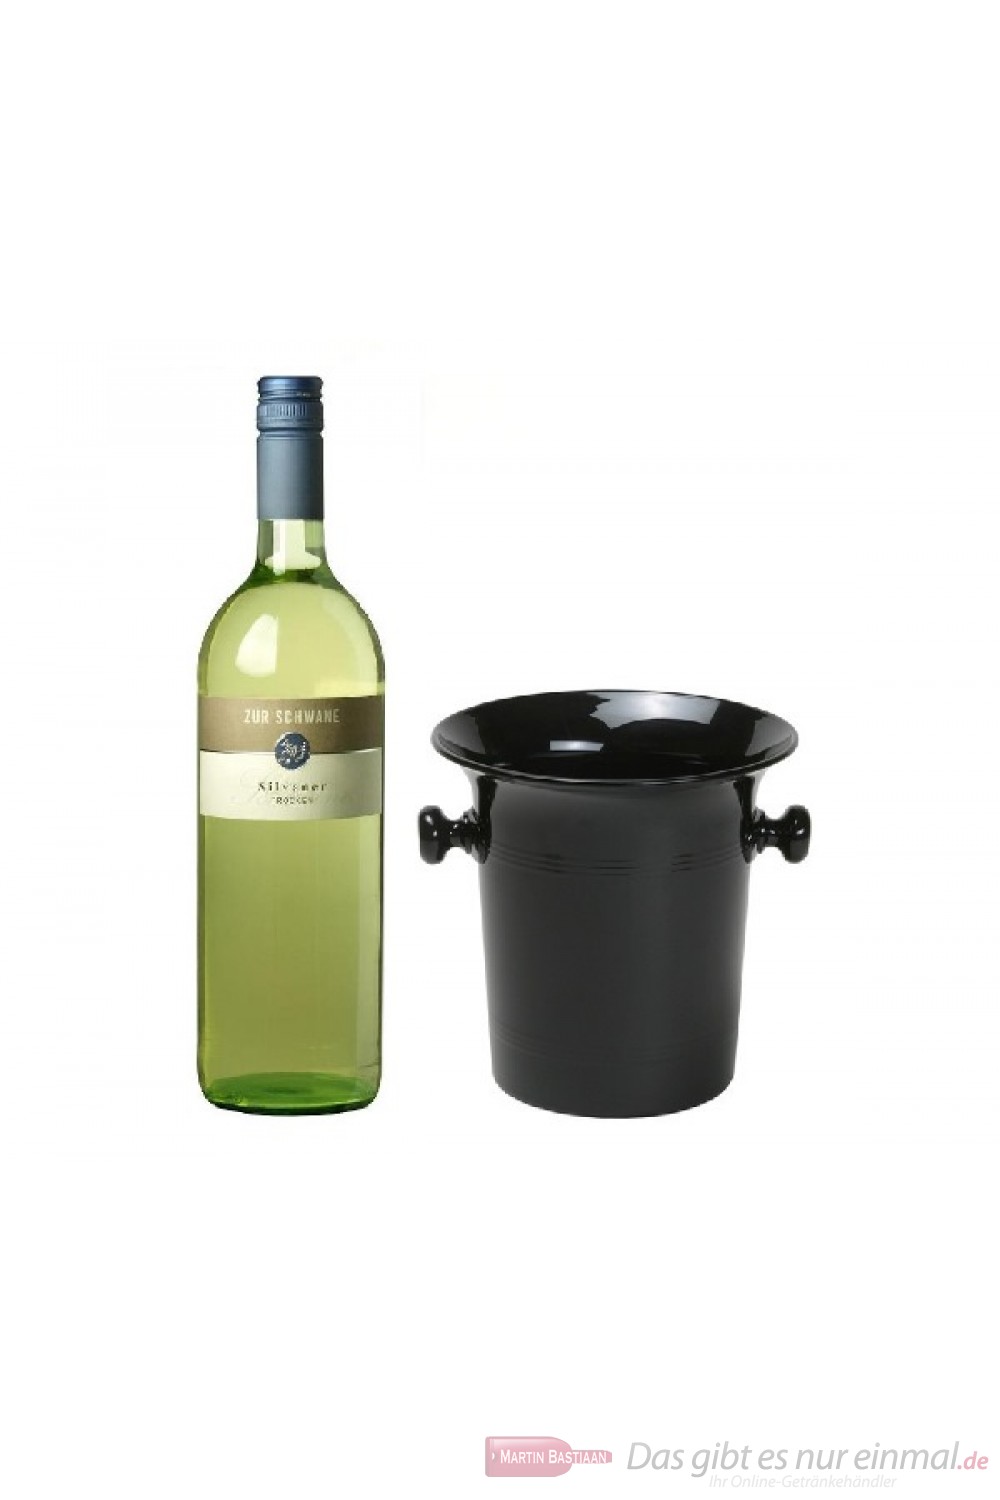 Zur Schwane Silvaner Qba trocken Weißwein 2012 1,0l in Wein Kübel